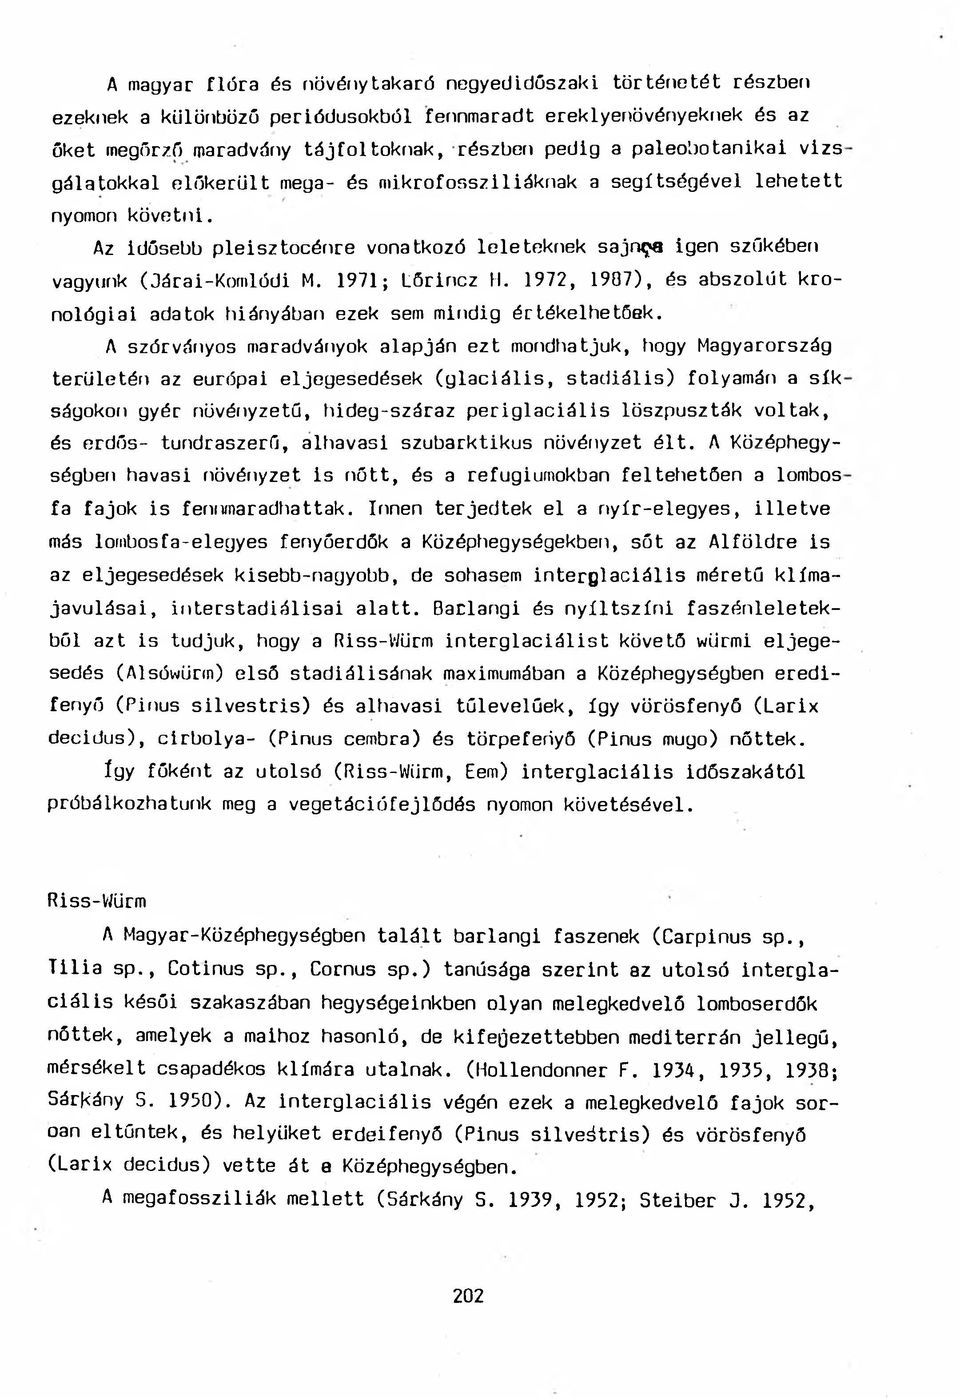 Az idősebb pleisztocénre vonatkozó leleteknek sajn^a igen szűkében vagyunk (Járai-Komlódi M. 1971; Lőrincz H. 1972, 1907), és abszolút kronológiai adatok hiányában ezek sem mindig értékelhetőek.